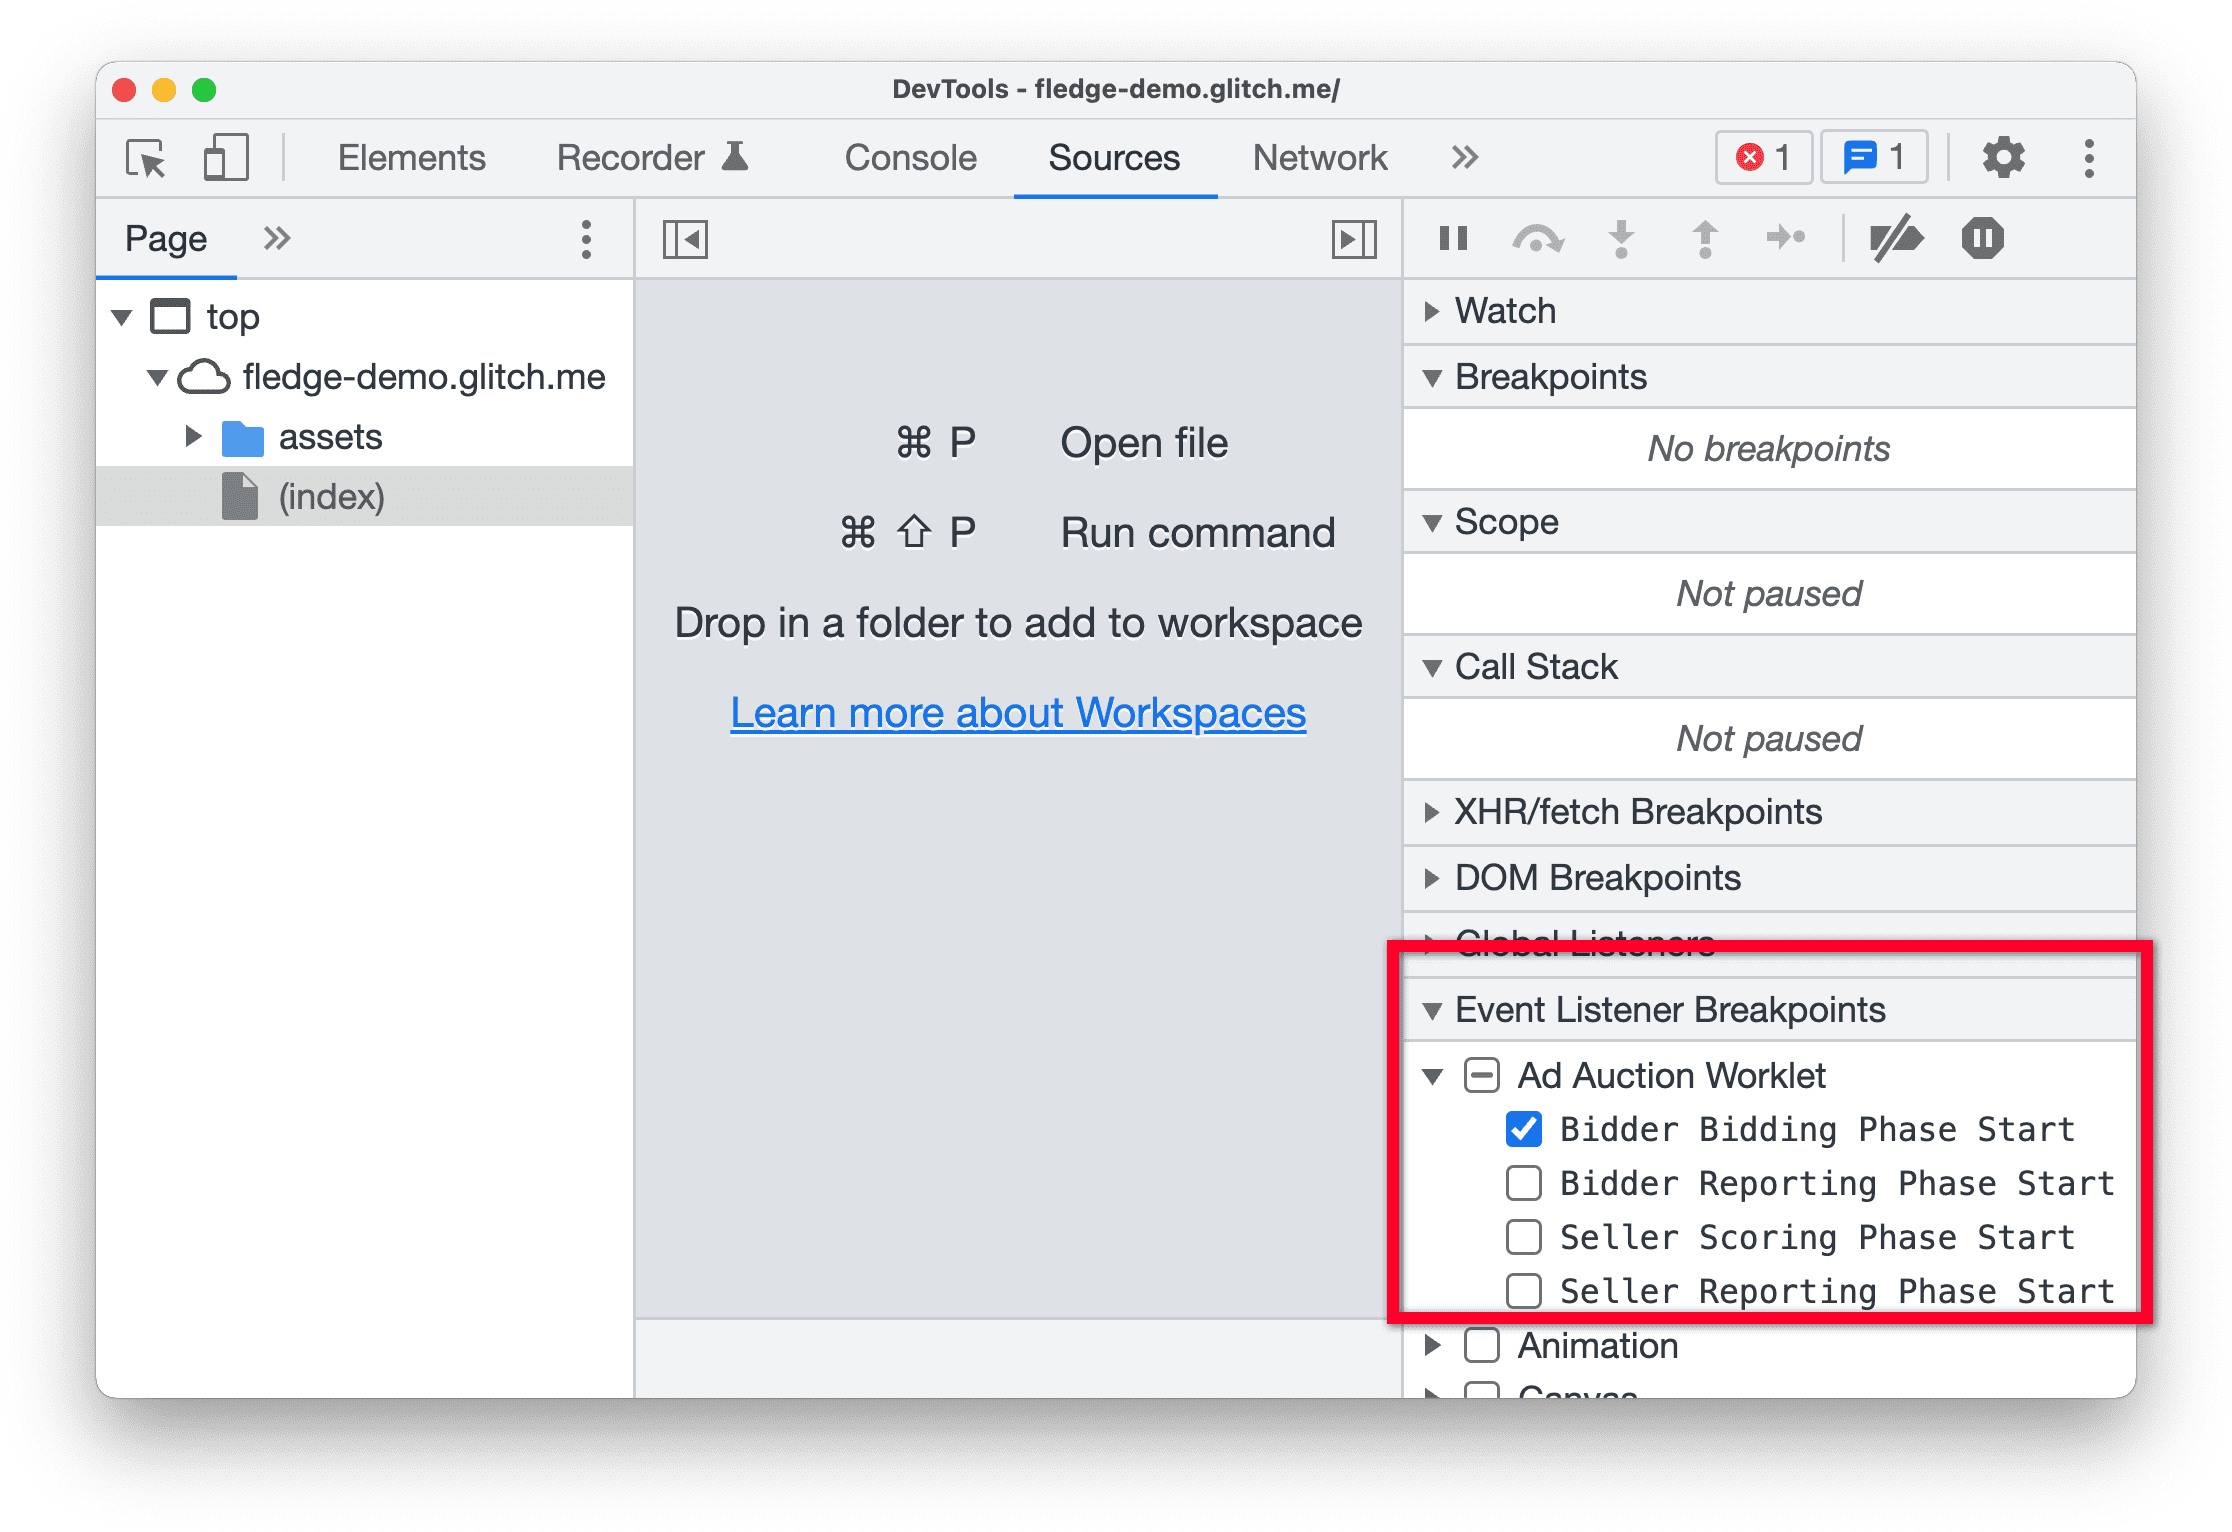 כלי פיתוח ב-Chrome Canary, שמדגישים את החלונית Event Listener Breakpoints בחלונית &#39;מקורות&#39;. תחילת שלב הבידינג של מגיש הצעות המחיר נבחר במסגרת worklet של מכרז מודעות.